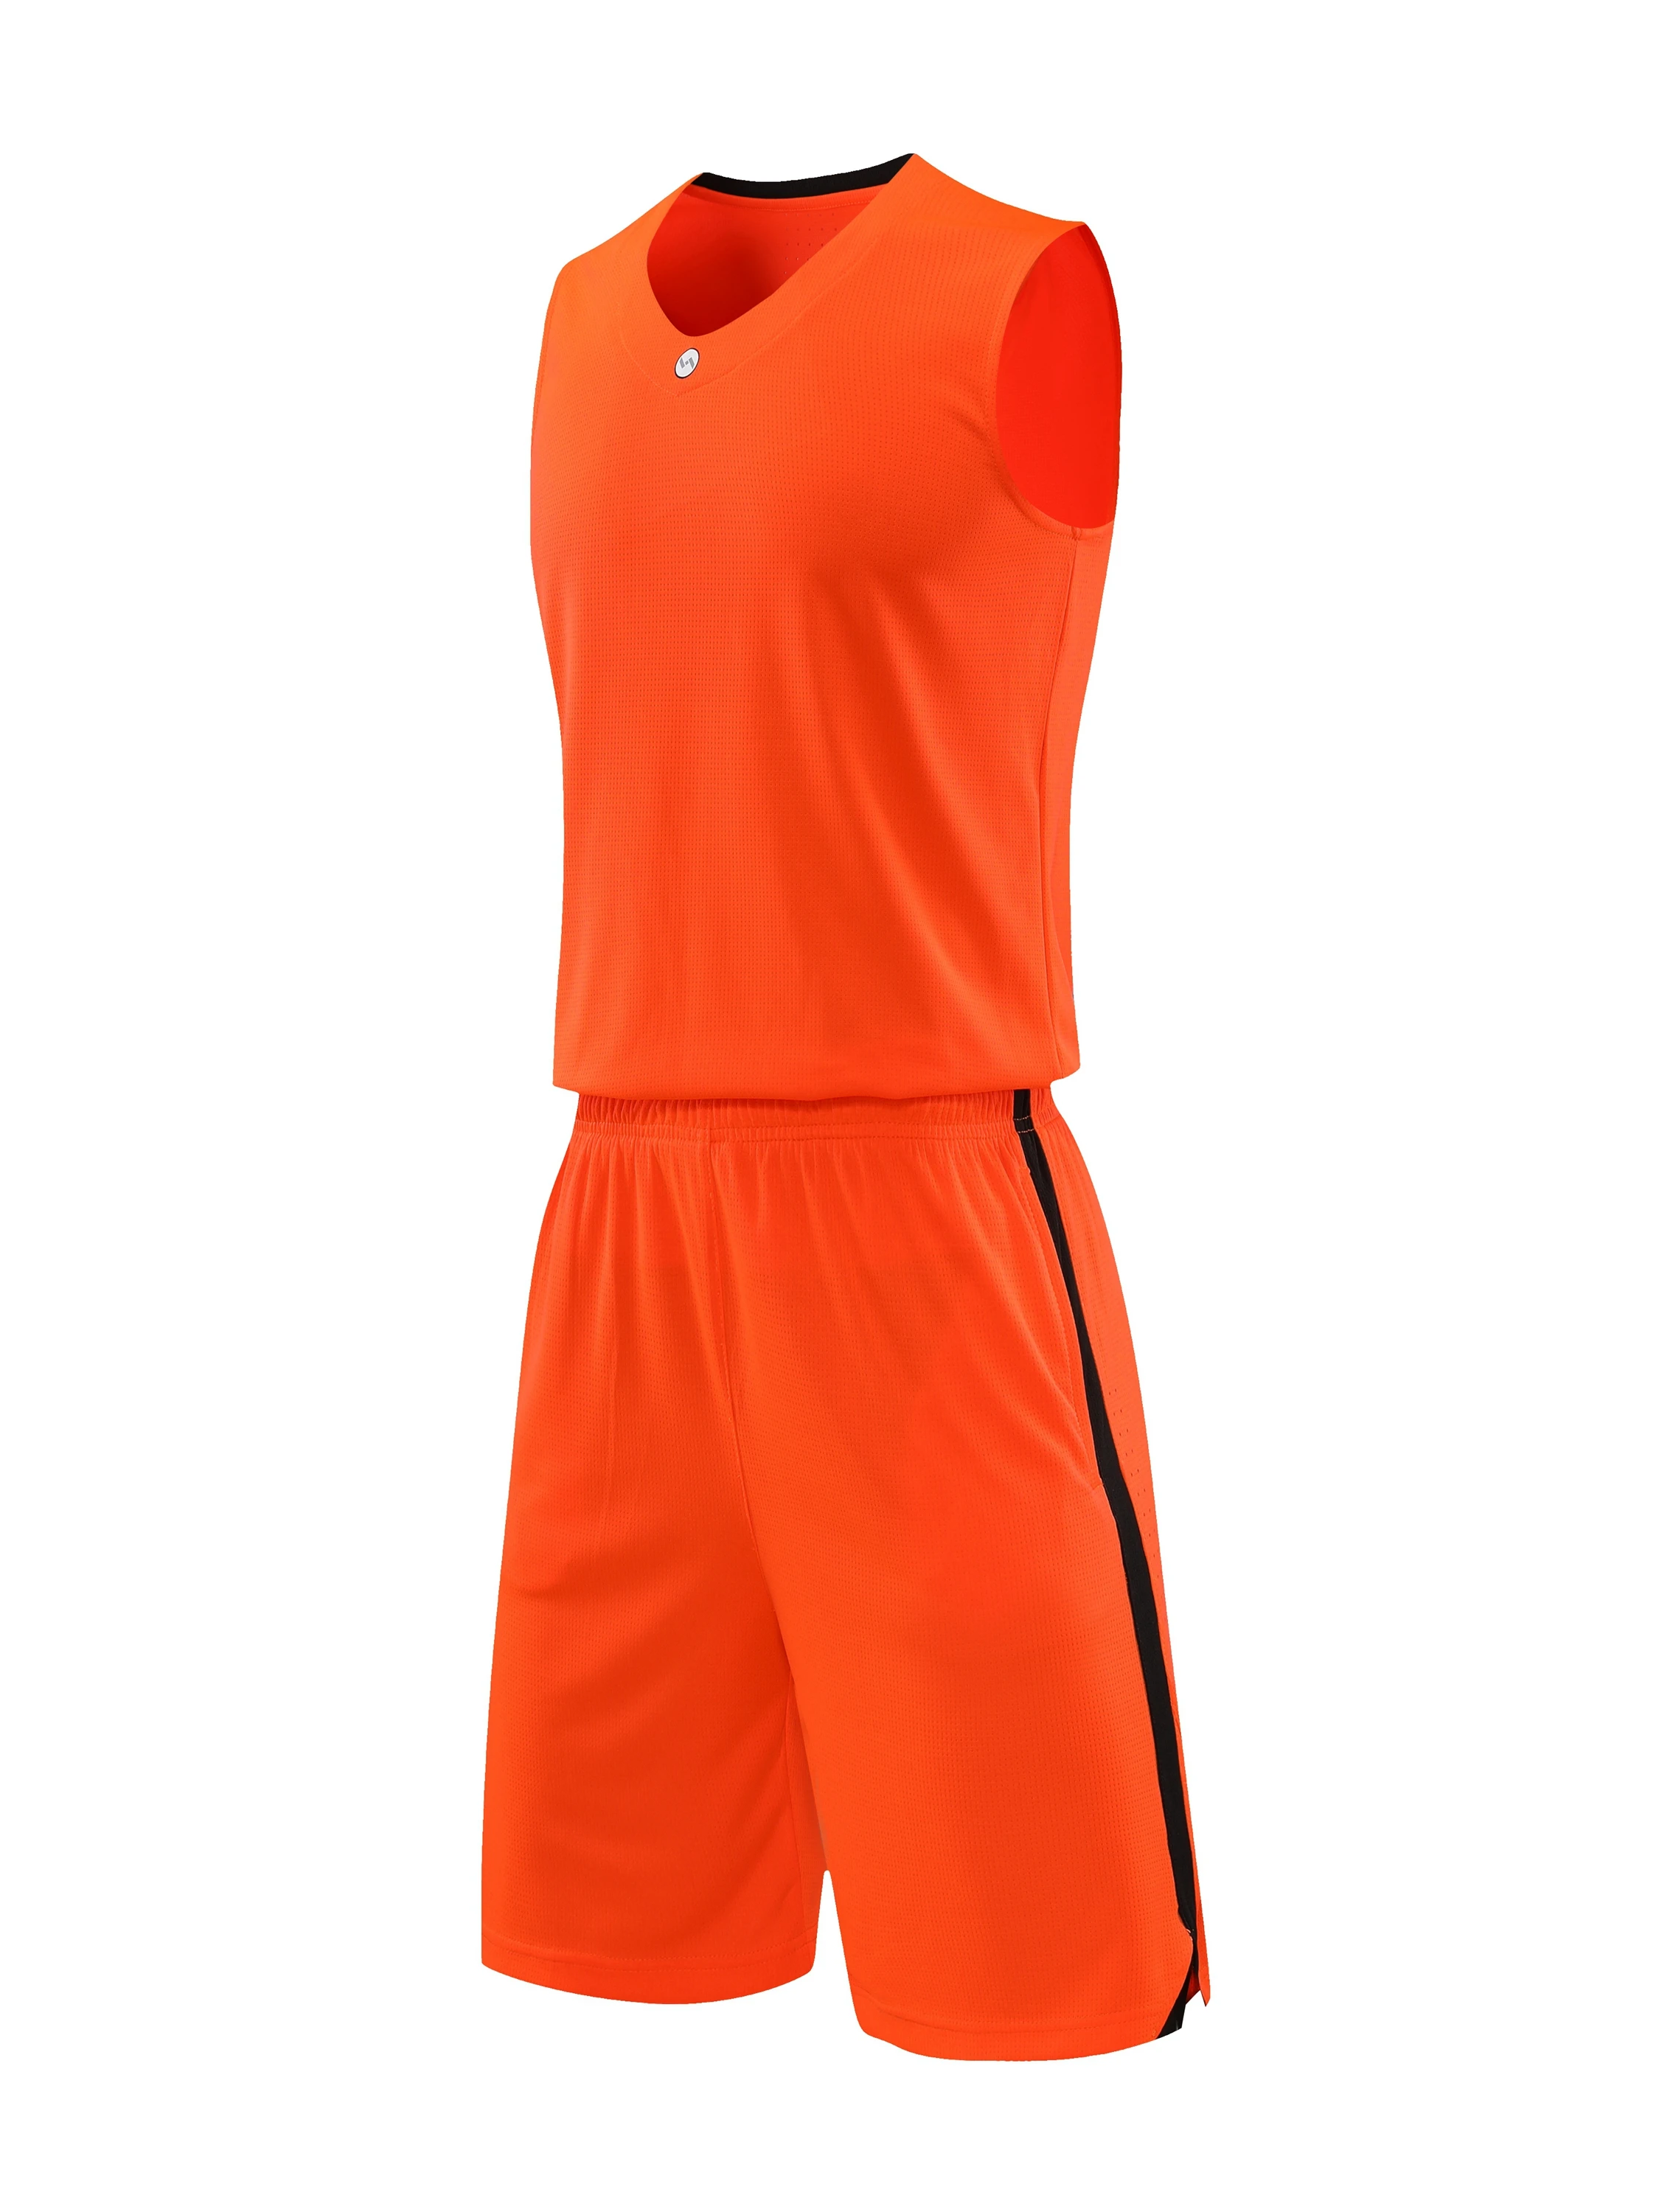 

Мужской баскетбольный костюм высокого качества с индивидуальным принтом для бега тренировок фитнеса спортивная одежда дышащий чистый комплект баскетбольной формы